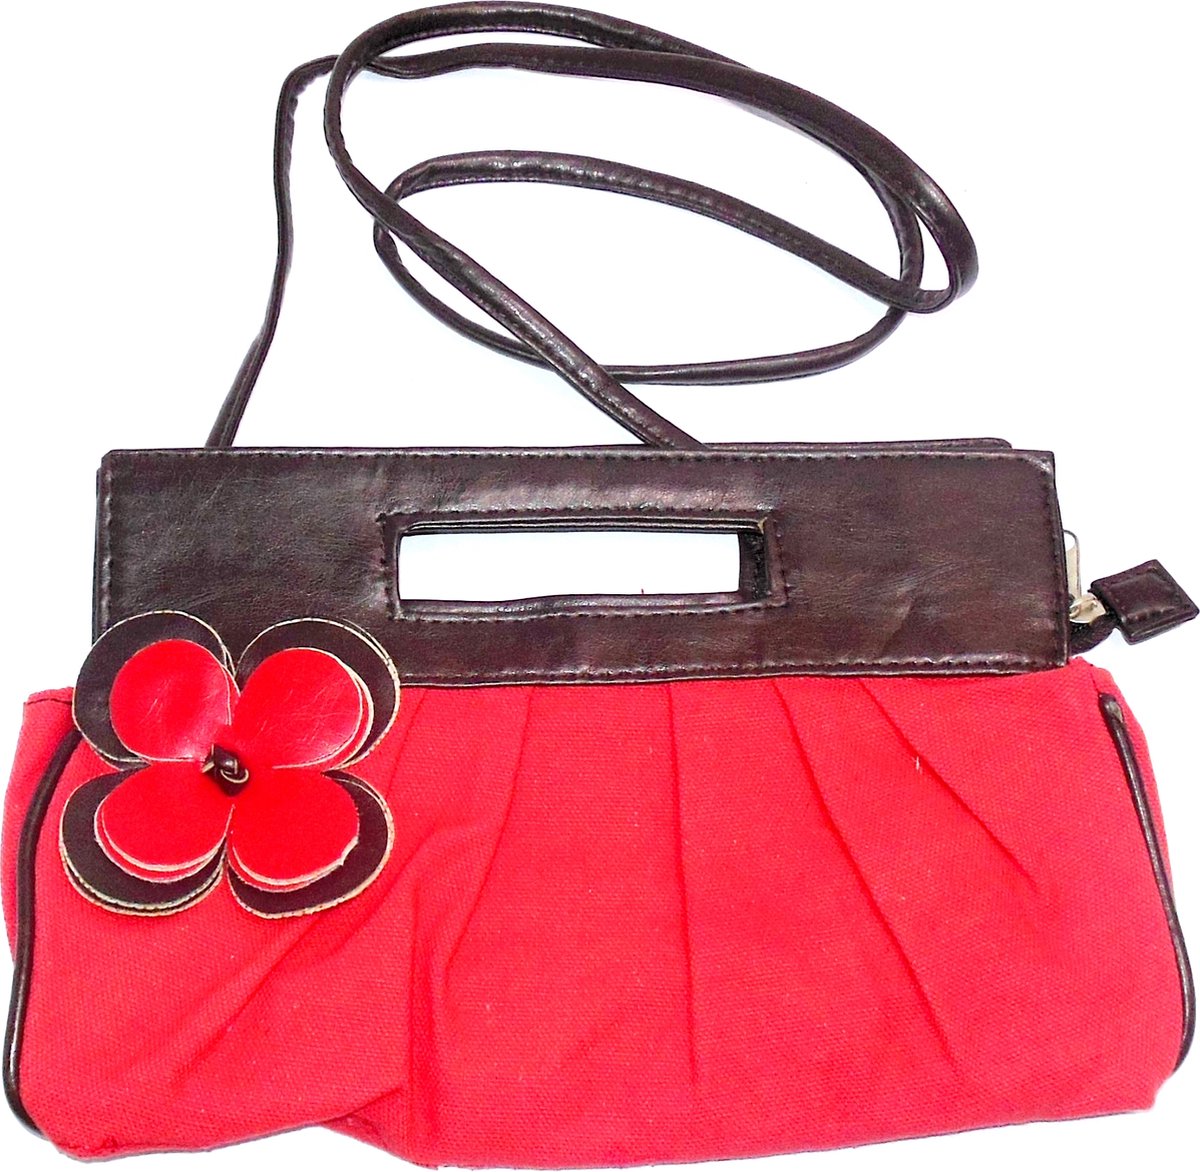 Handtas rood-bruin met bloem - lengte 27 cm / breedte 17 cm - Verjaardagscadeau